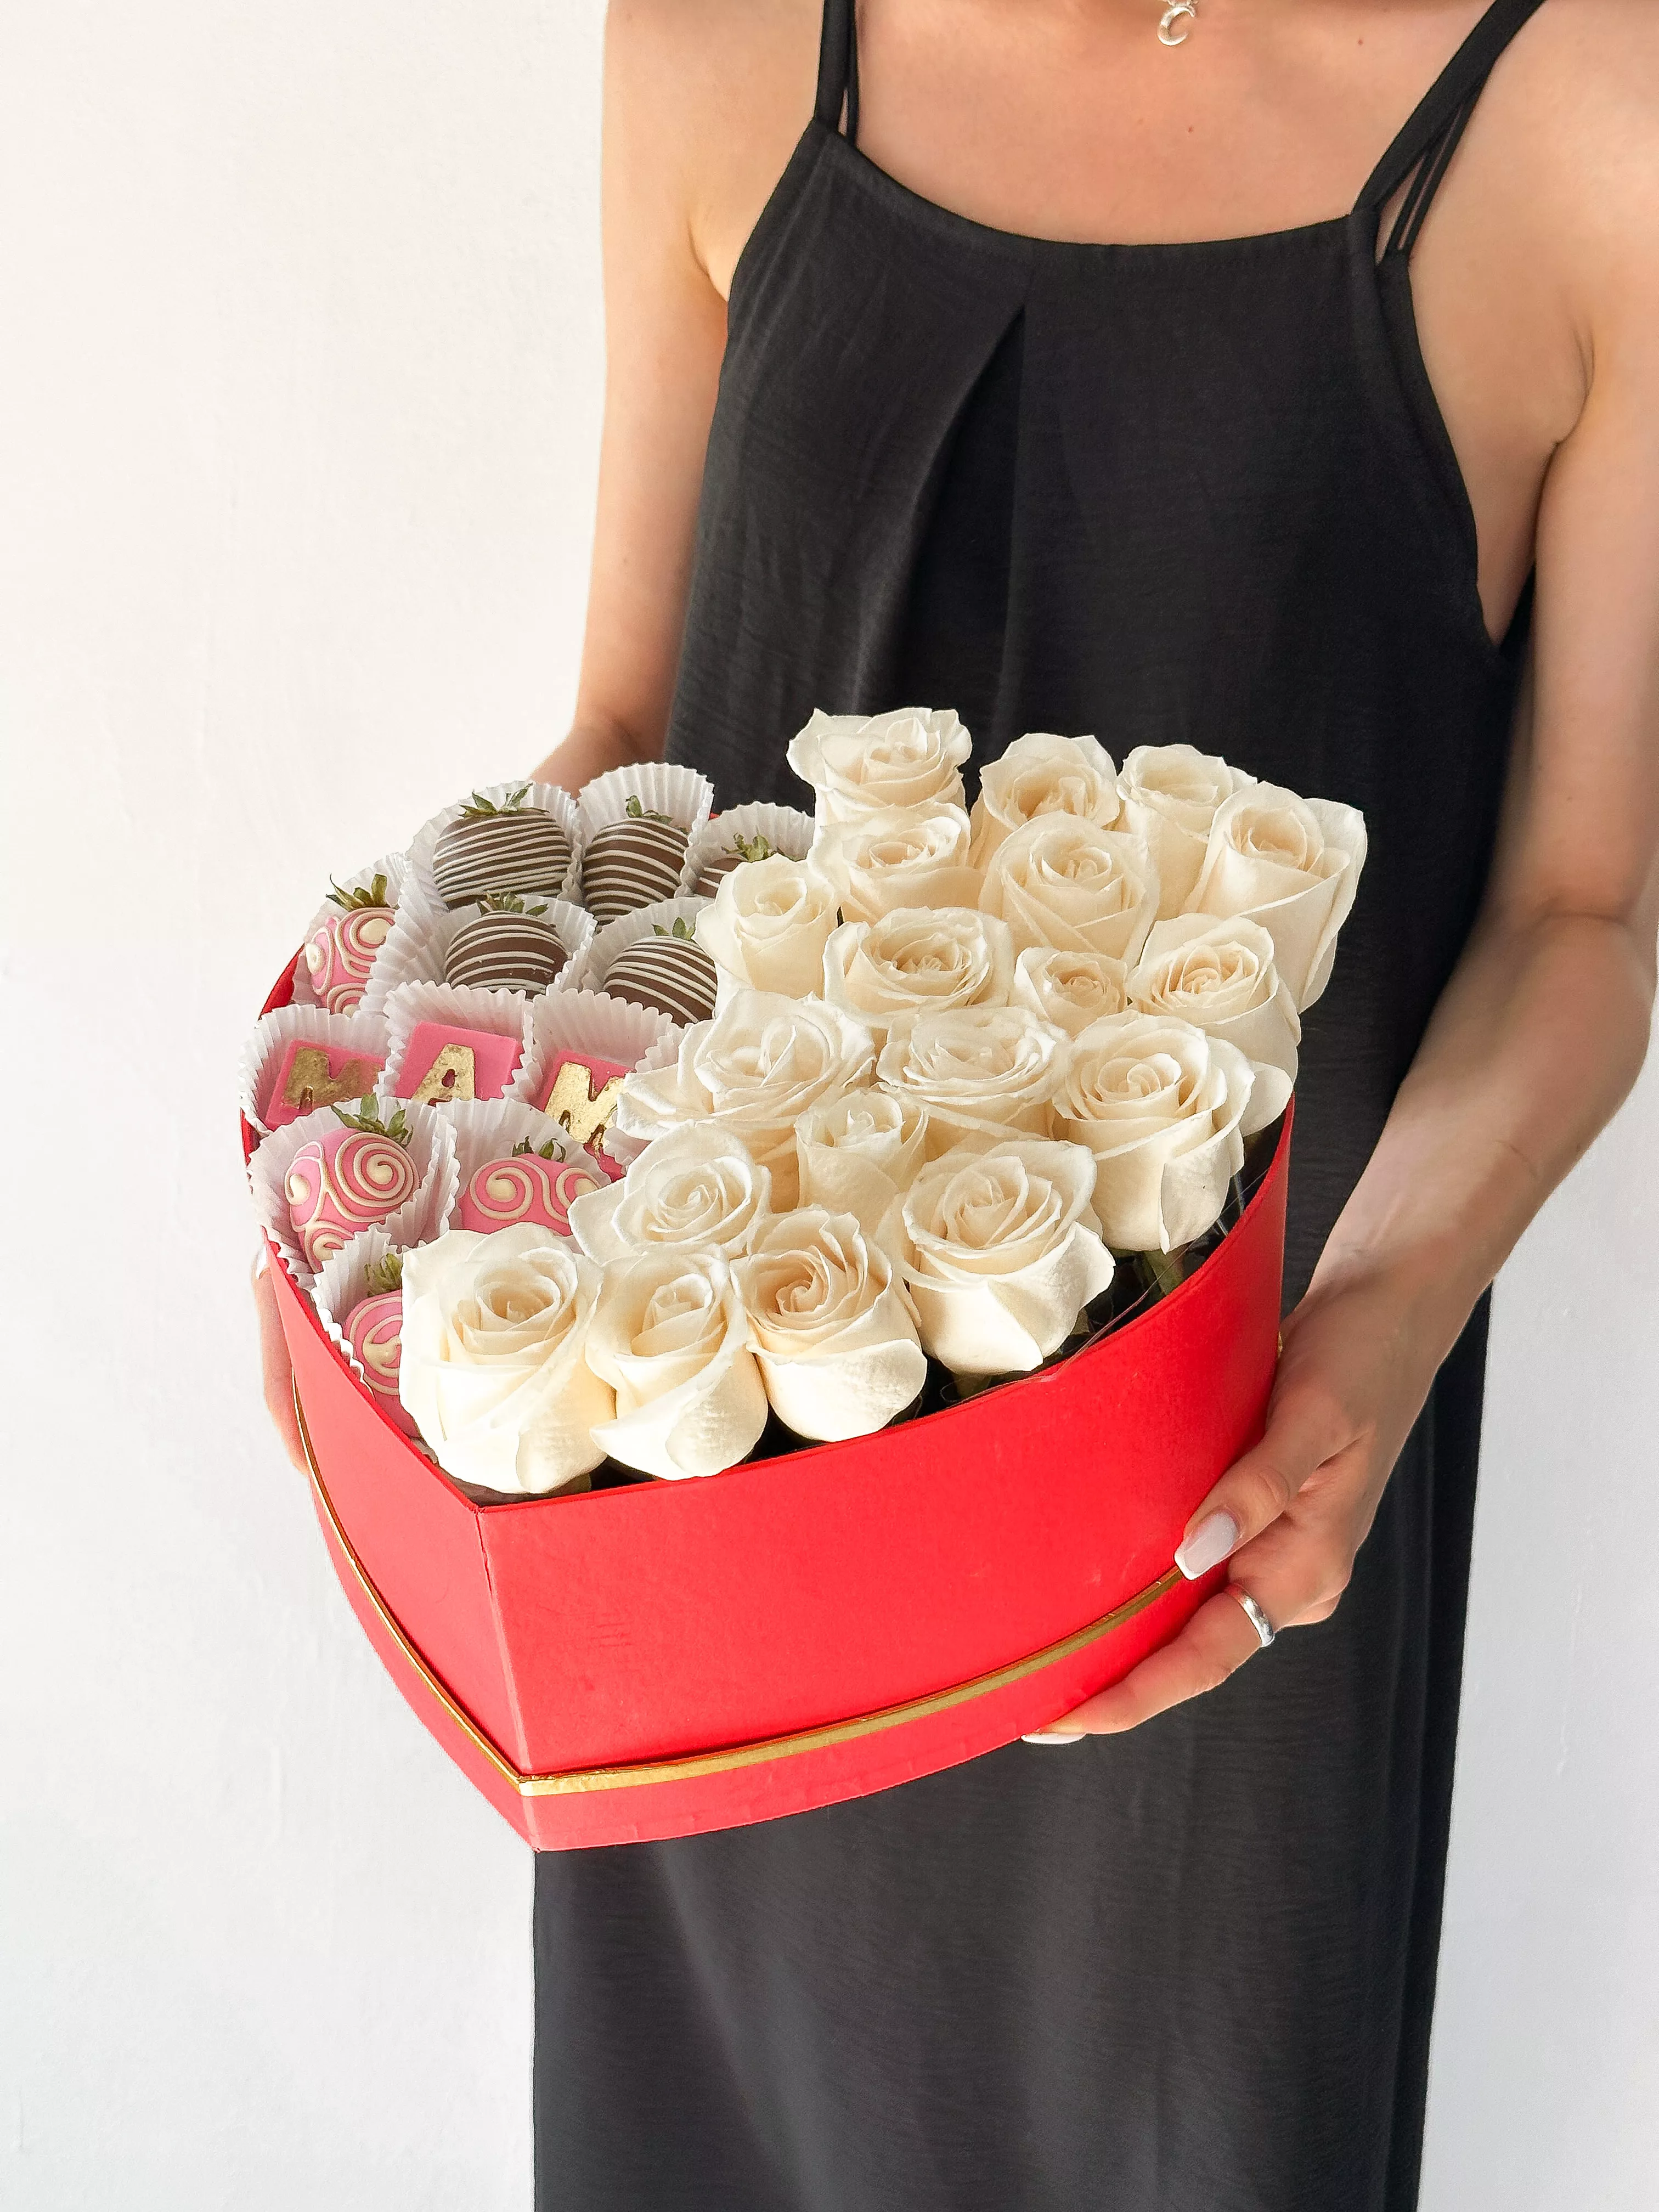 Клубничный бокс "Sweet Rose" клубника в шоколаде и розы в коробке